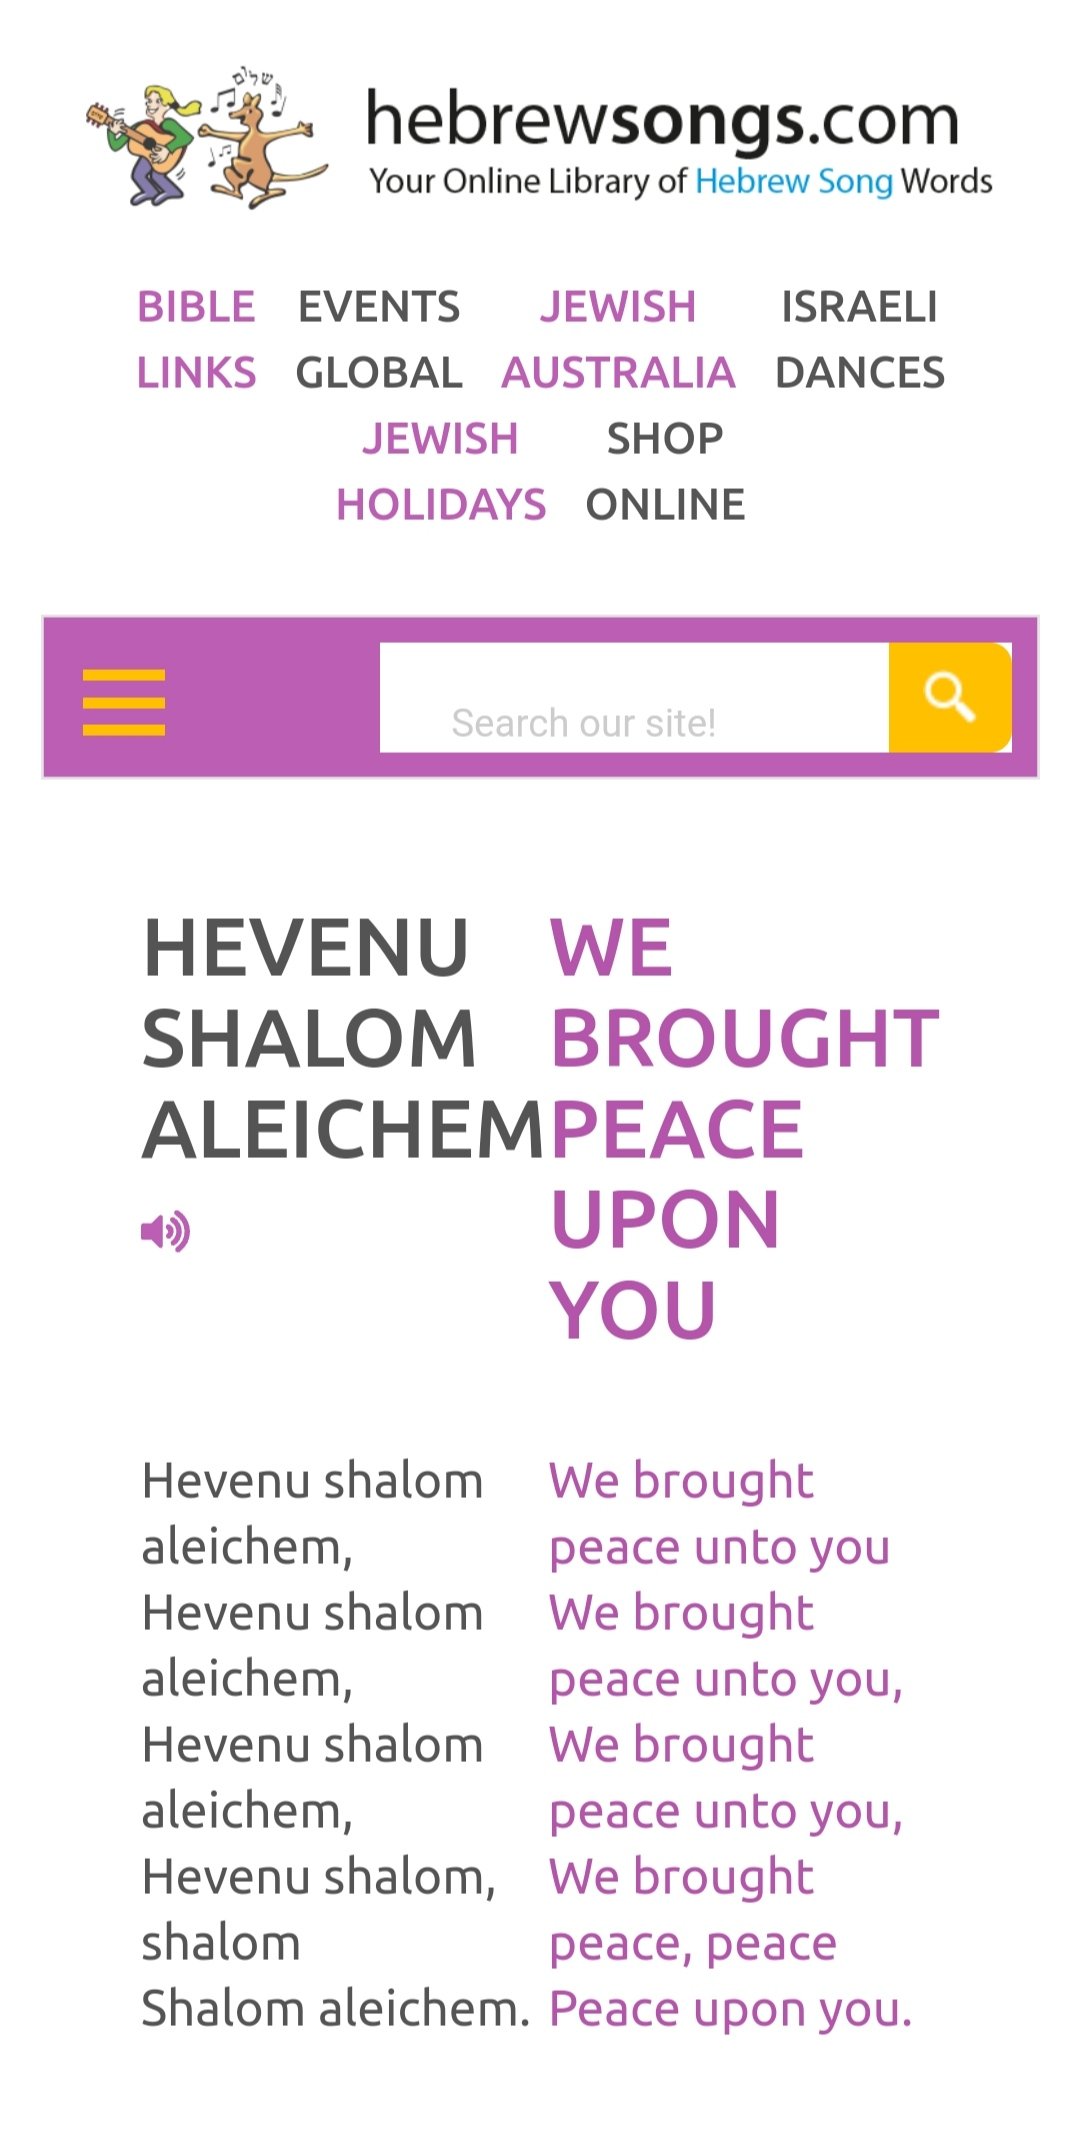 Shalom Aleichem 